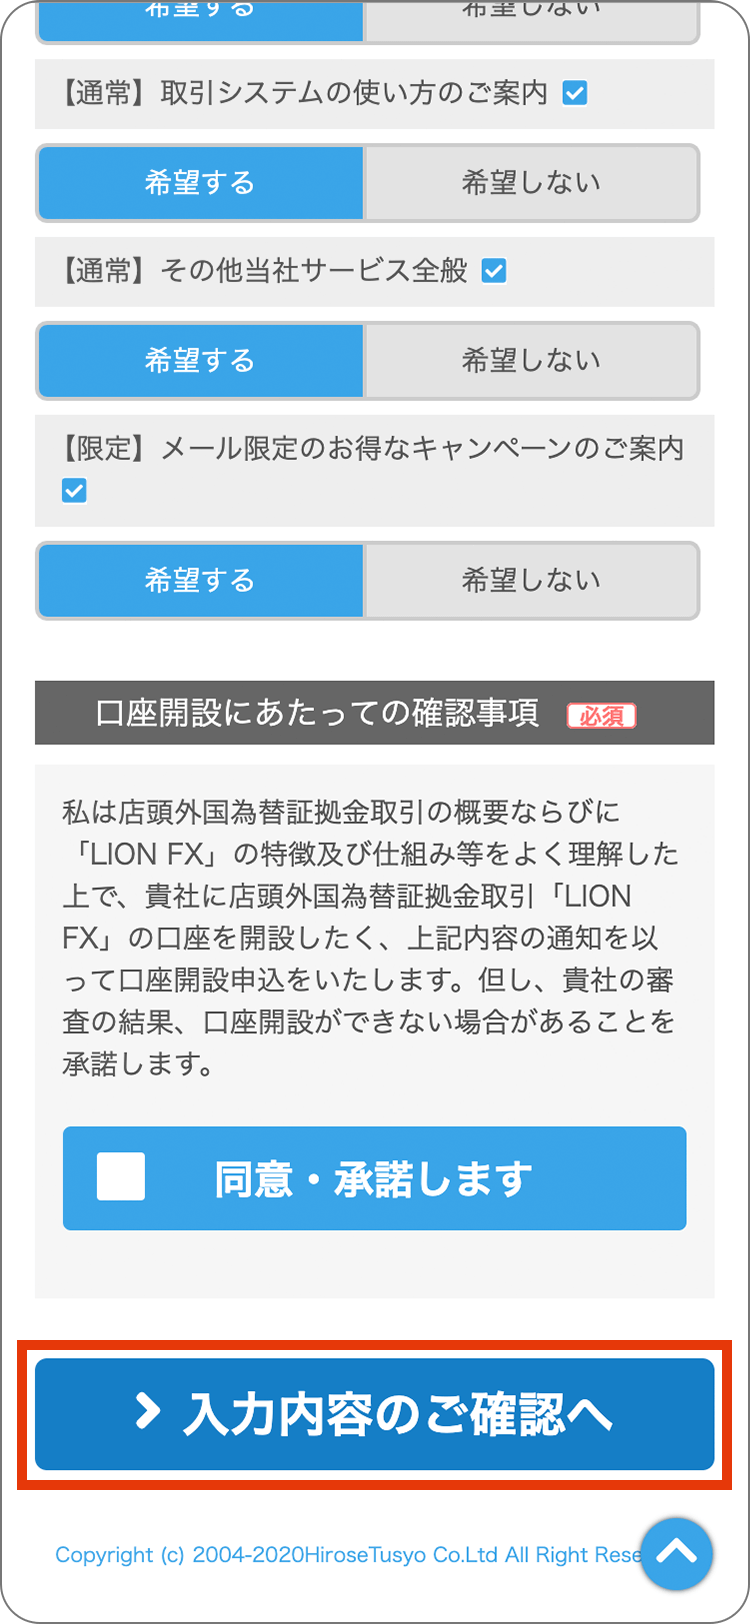 LION FXの申込フォーム入力の手順